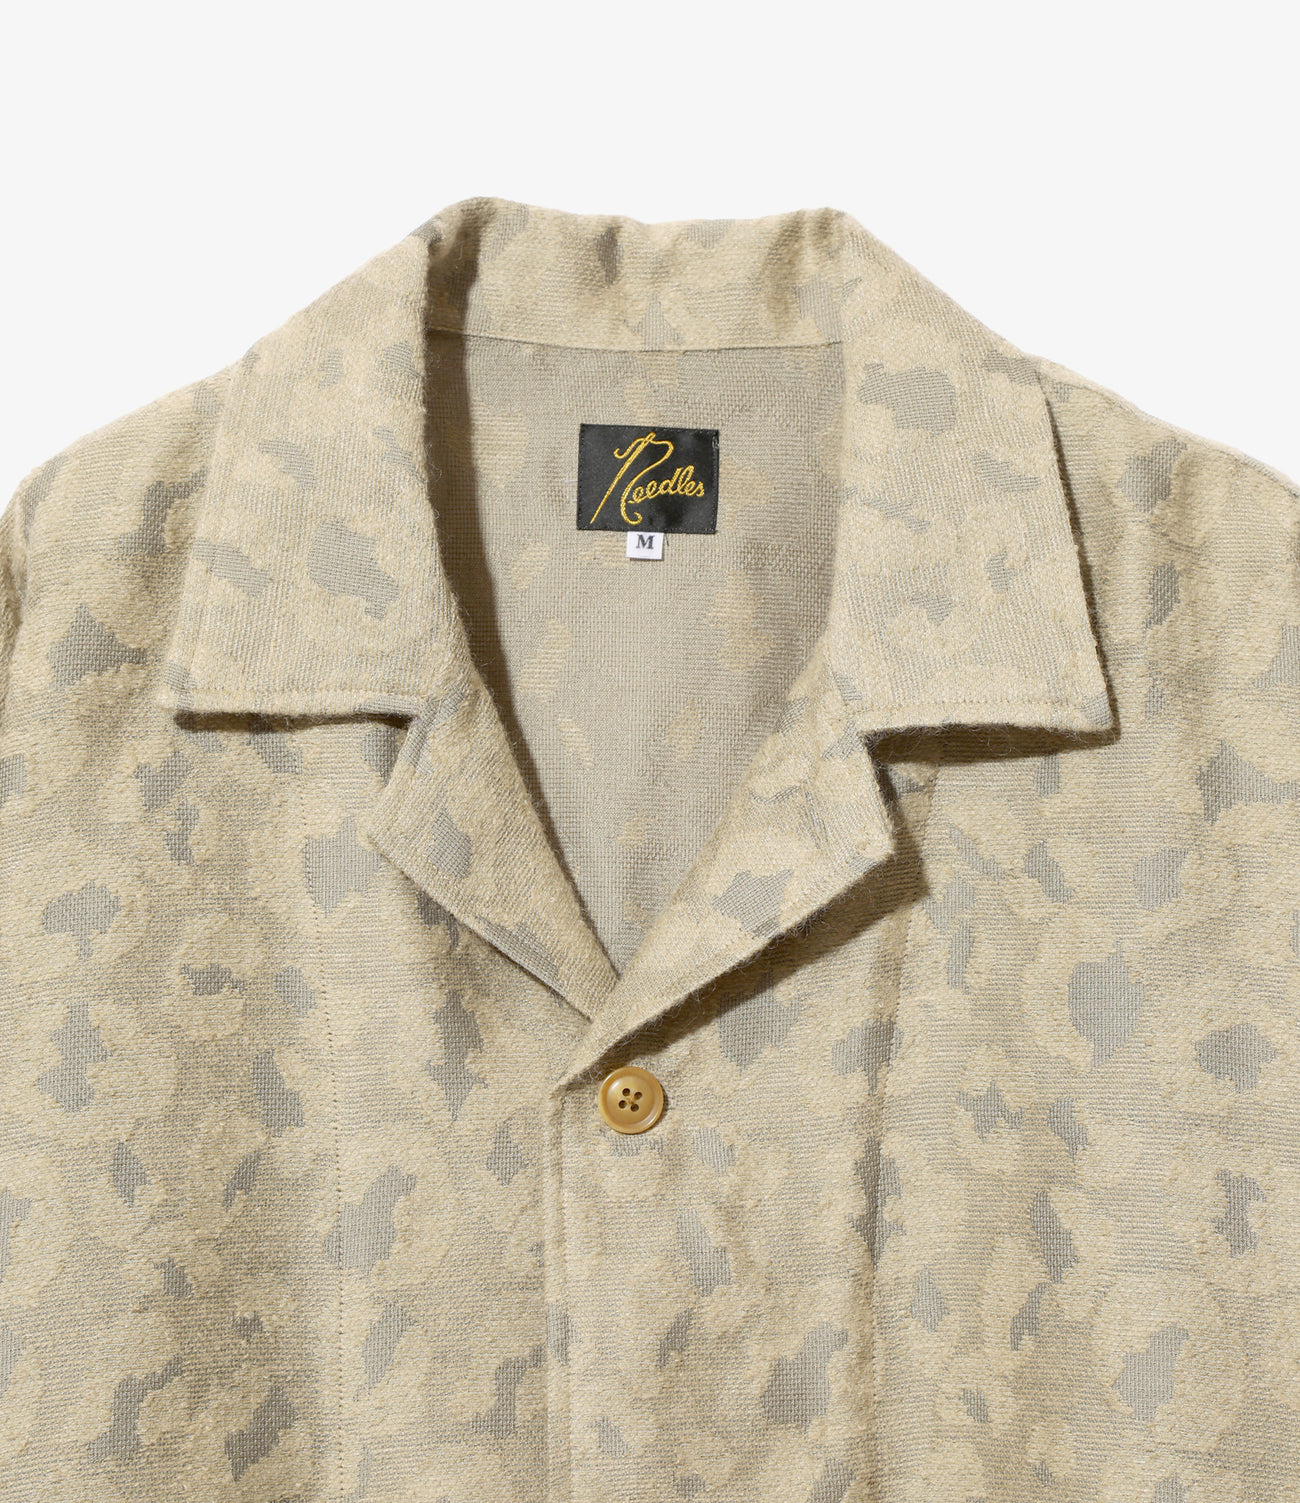 L/S Cabana Shirt - Leopard Jq. – NEPENTHES ONLINE STORE